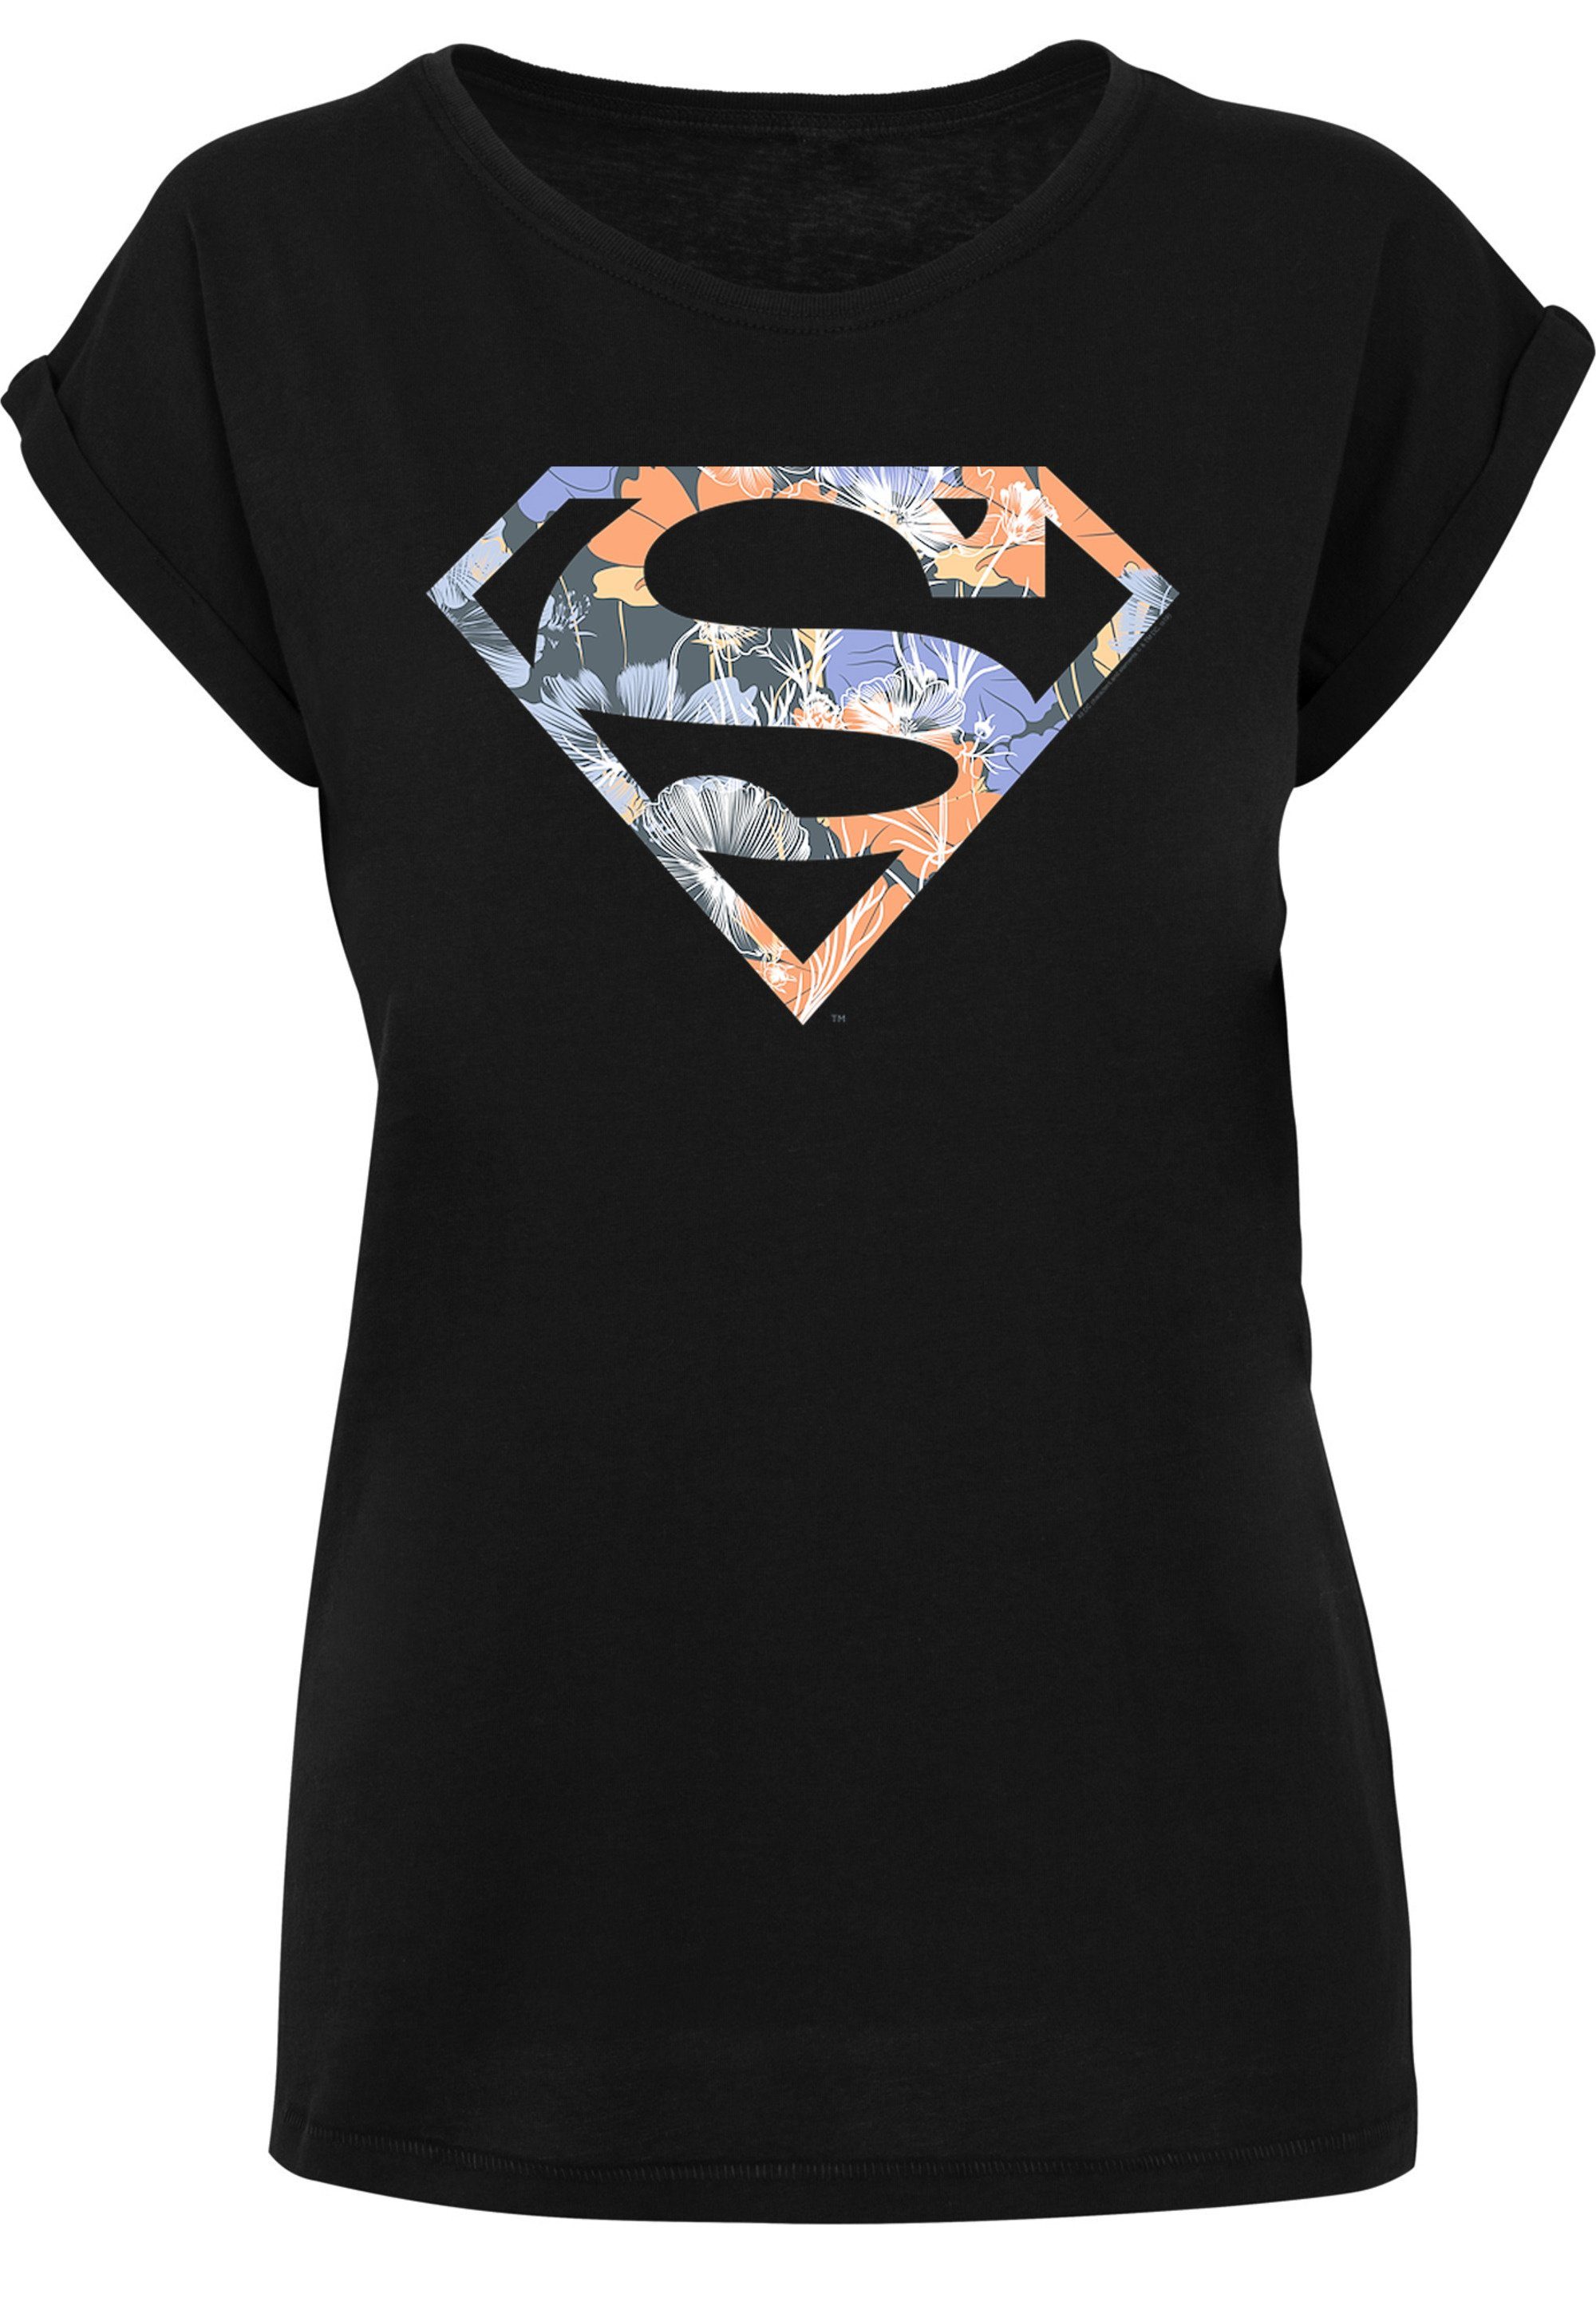 T-Shirt Comics Print Floral DC Logo Superman Superheld F4NT4STIC